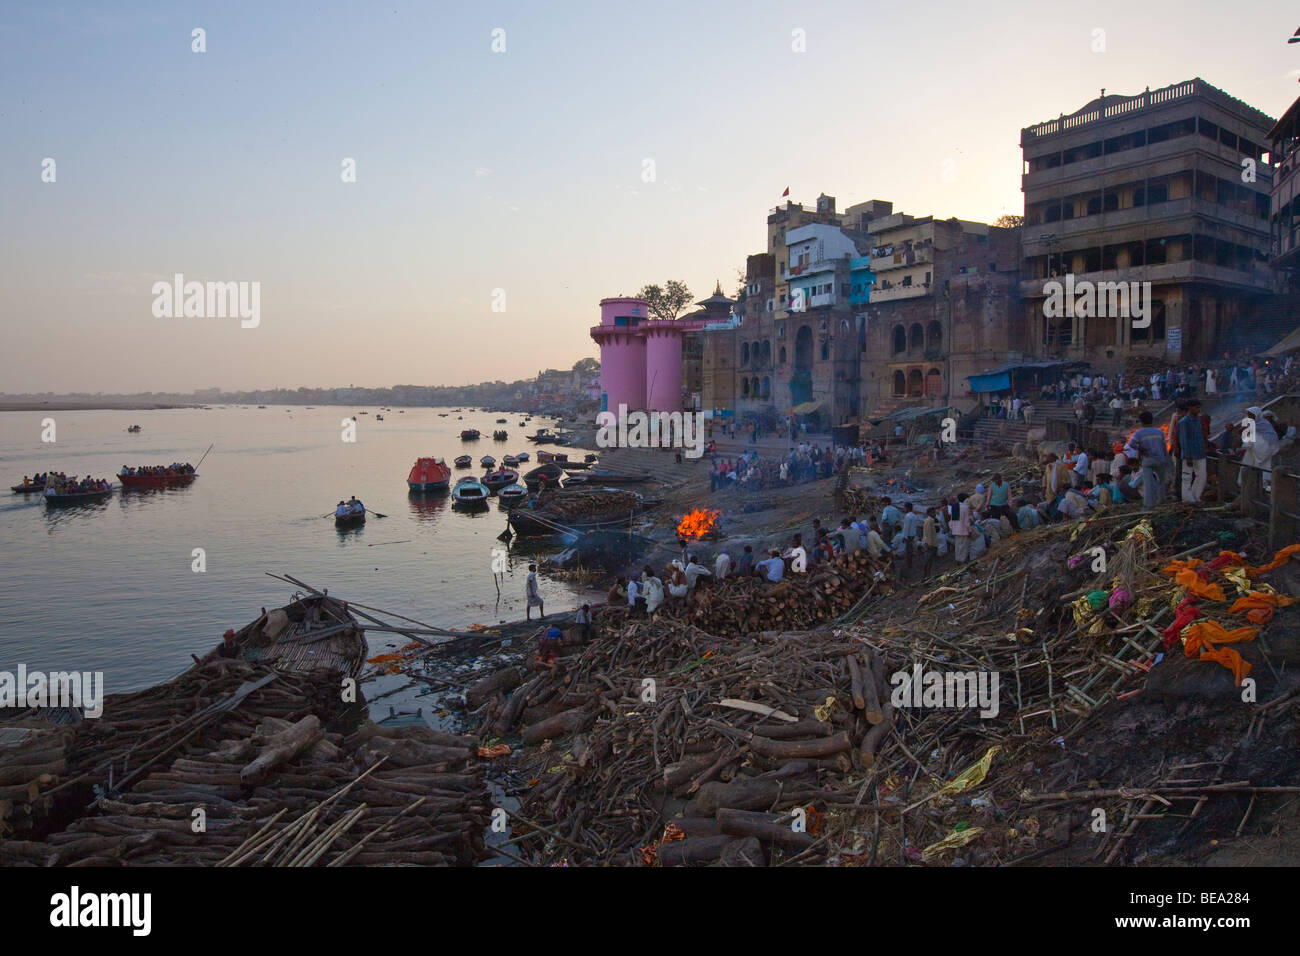 Burning Ghat de Varanasi Inde Banque D'Images